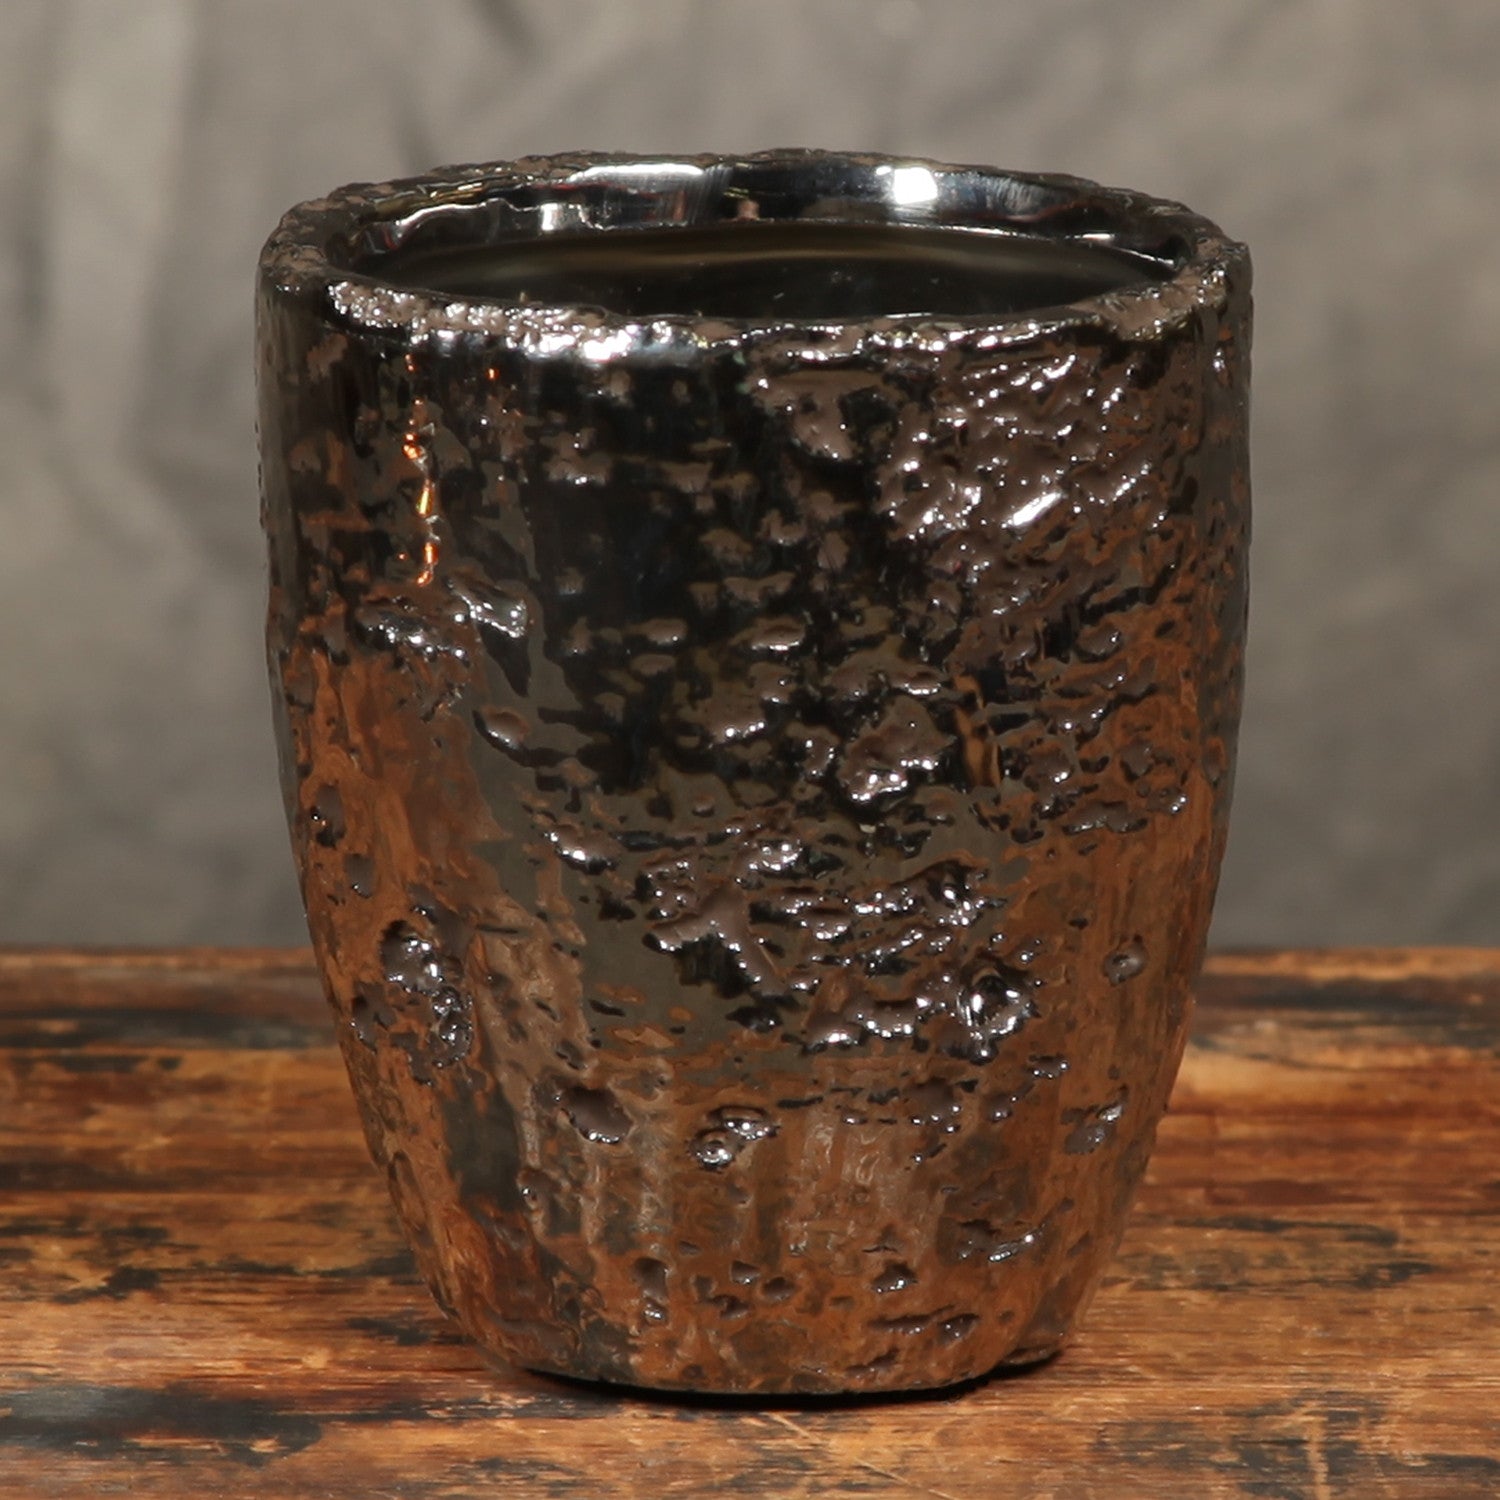 Pylon Ceramic Cup